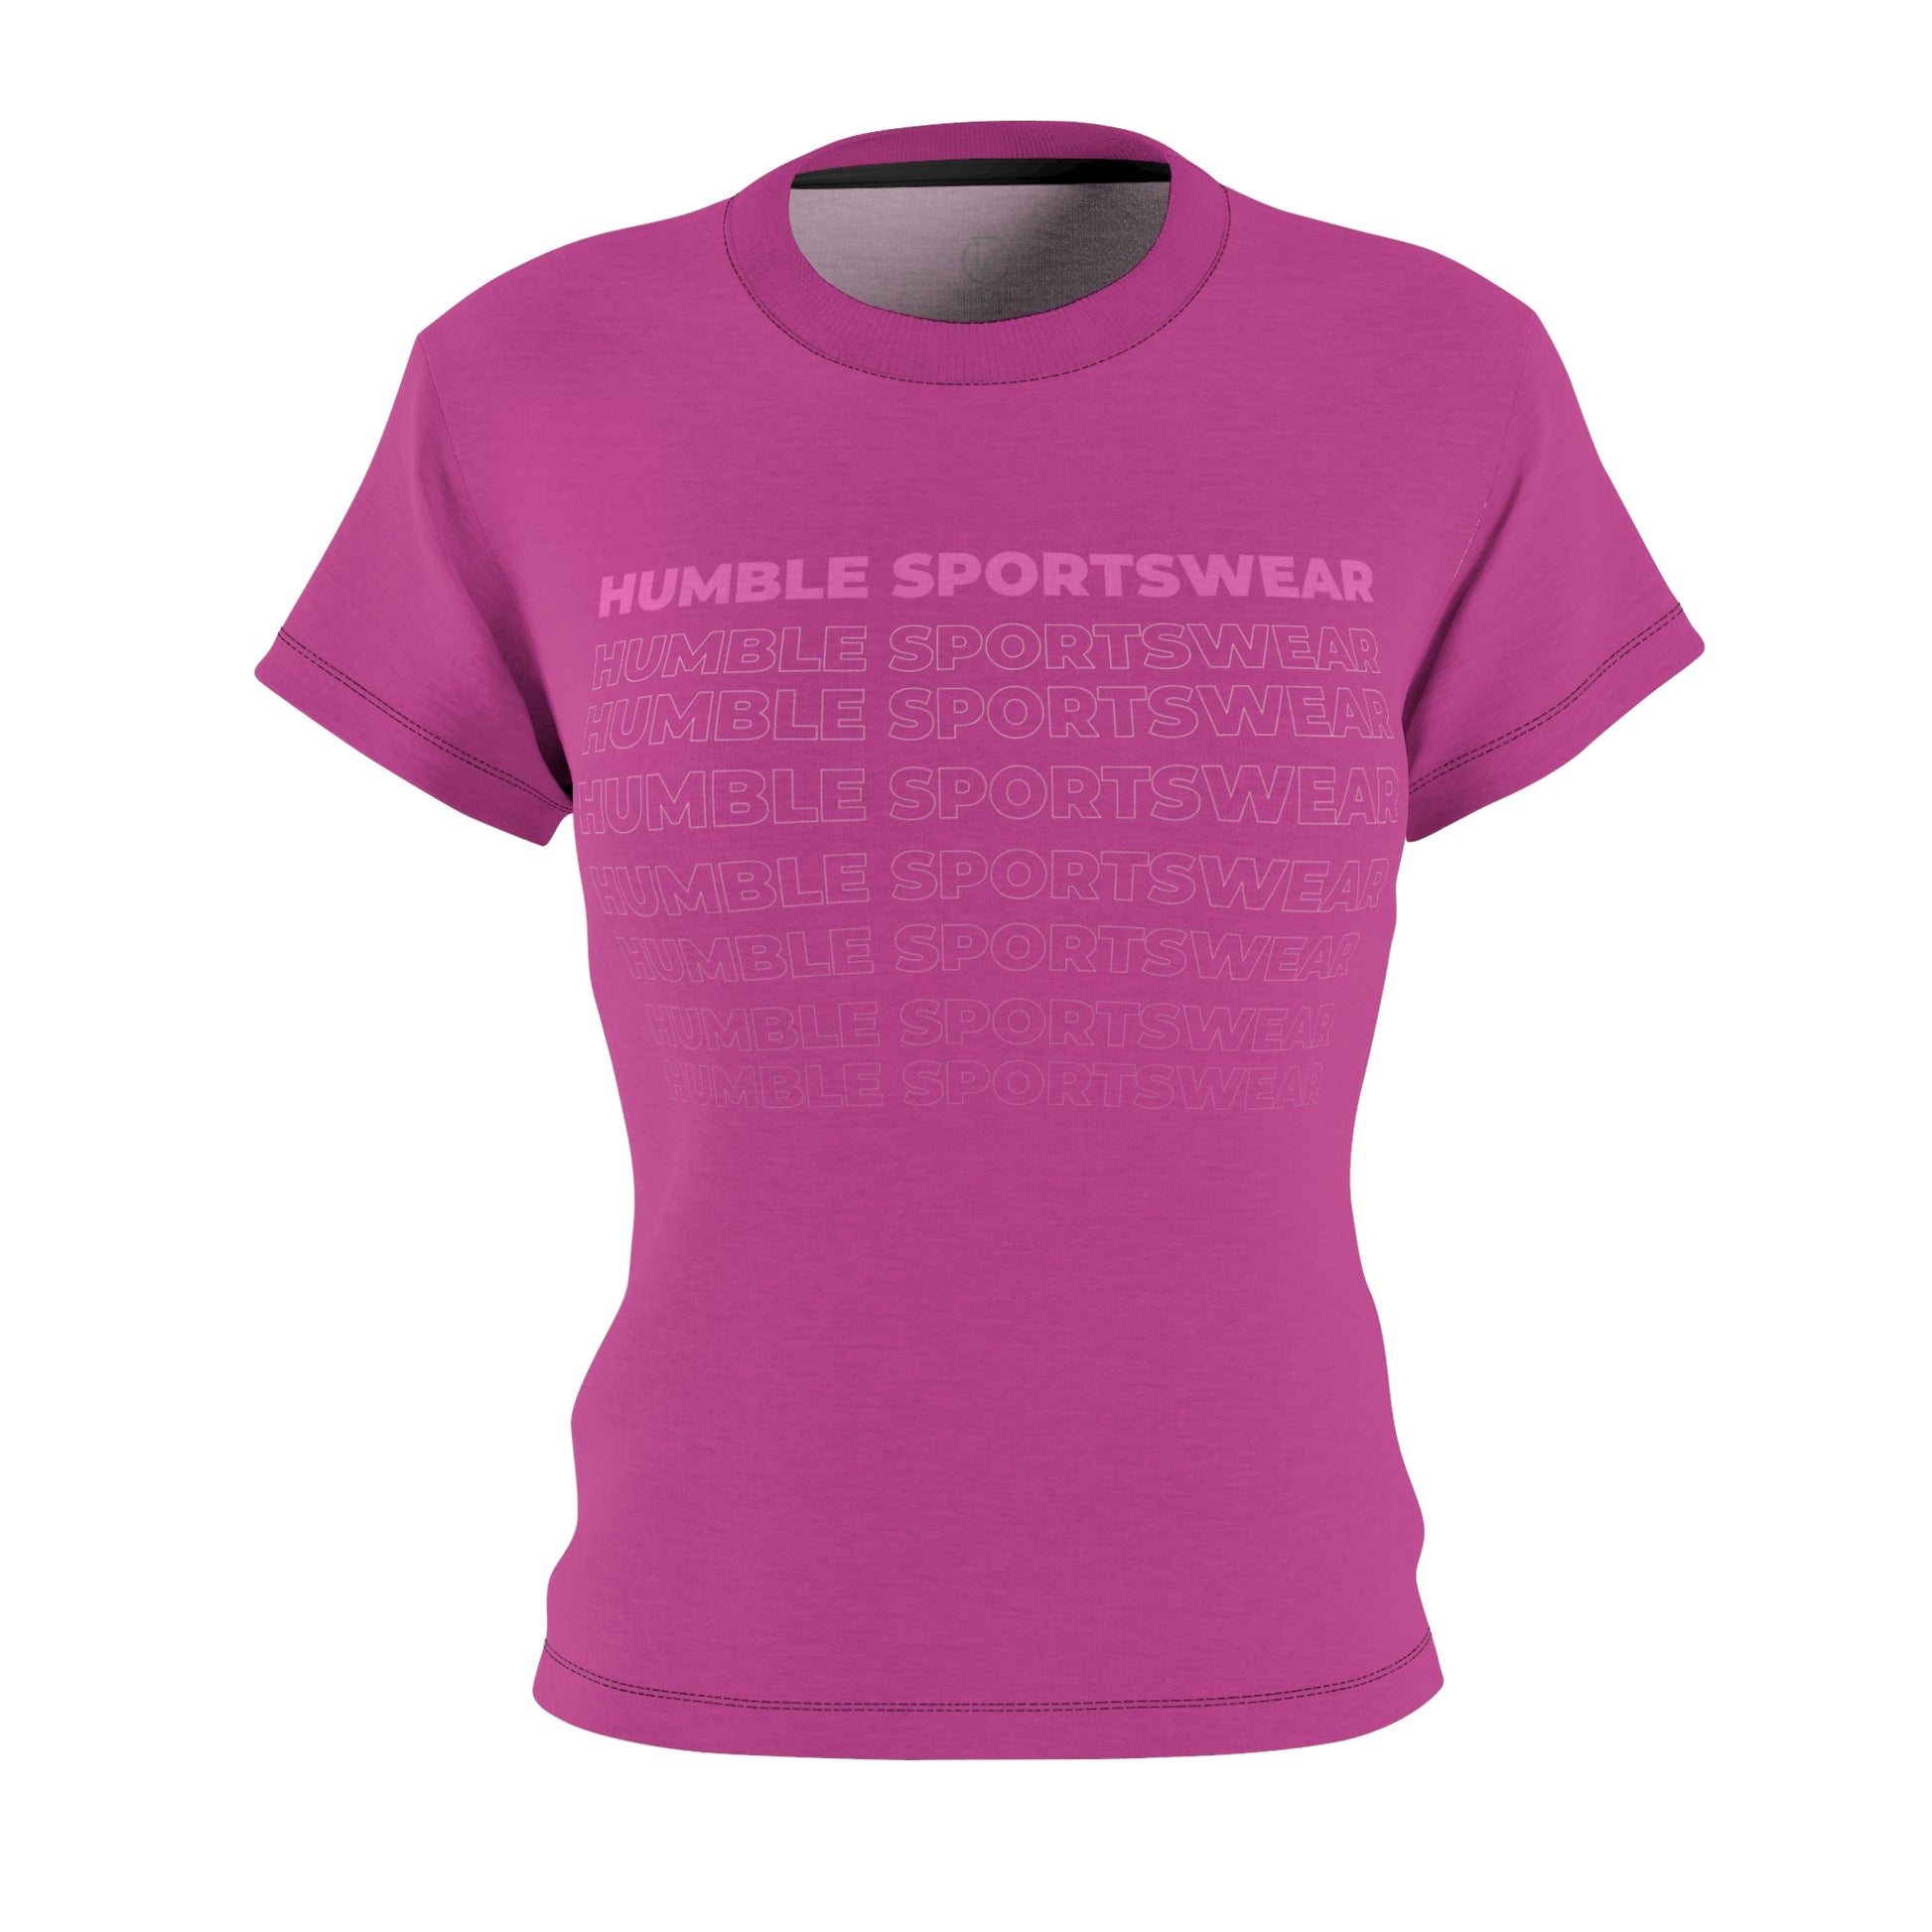 Humble Sportswear, women’s t-shirts, women’s crew neck t-shirts